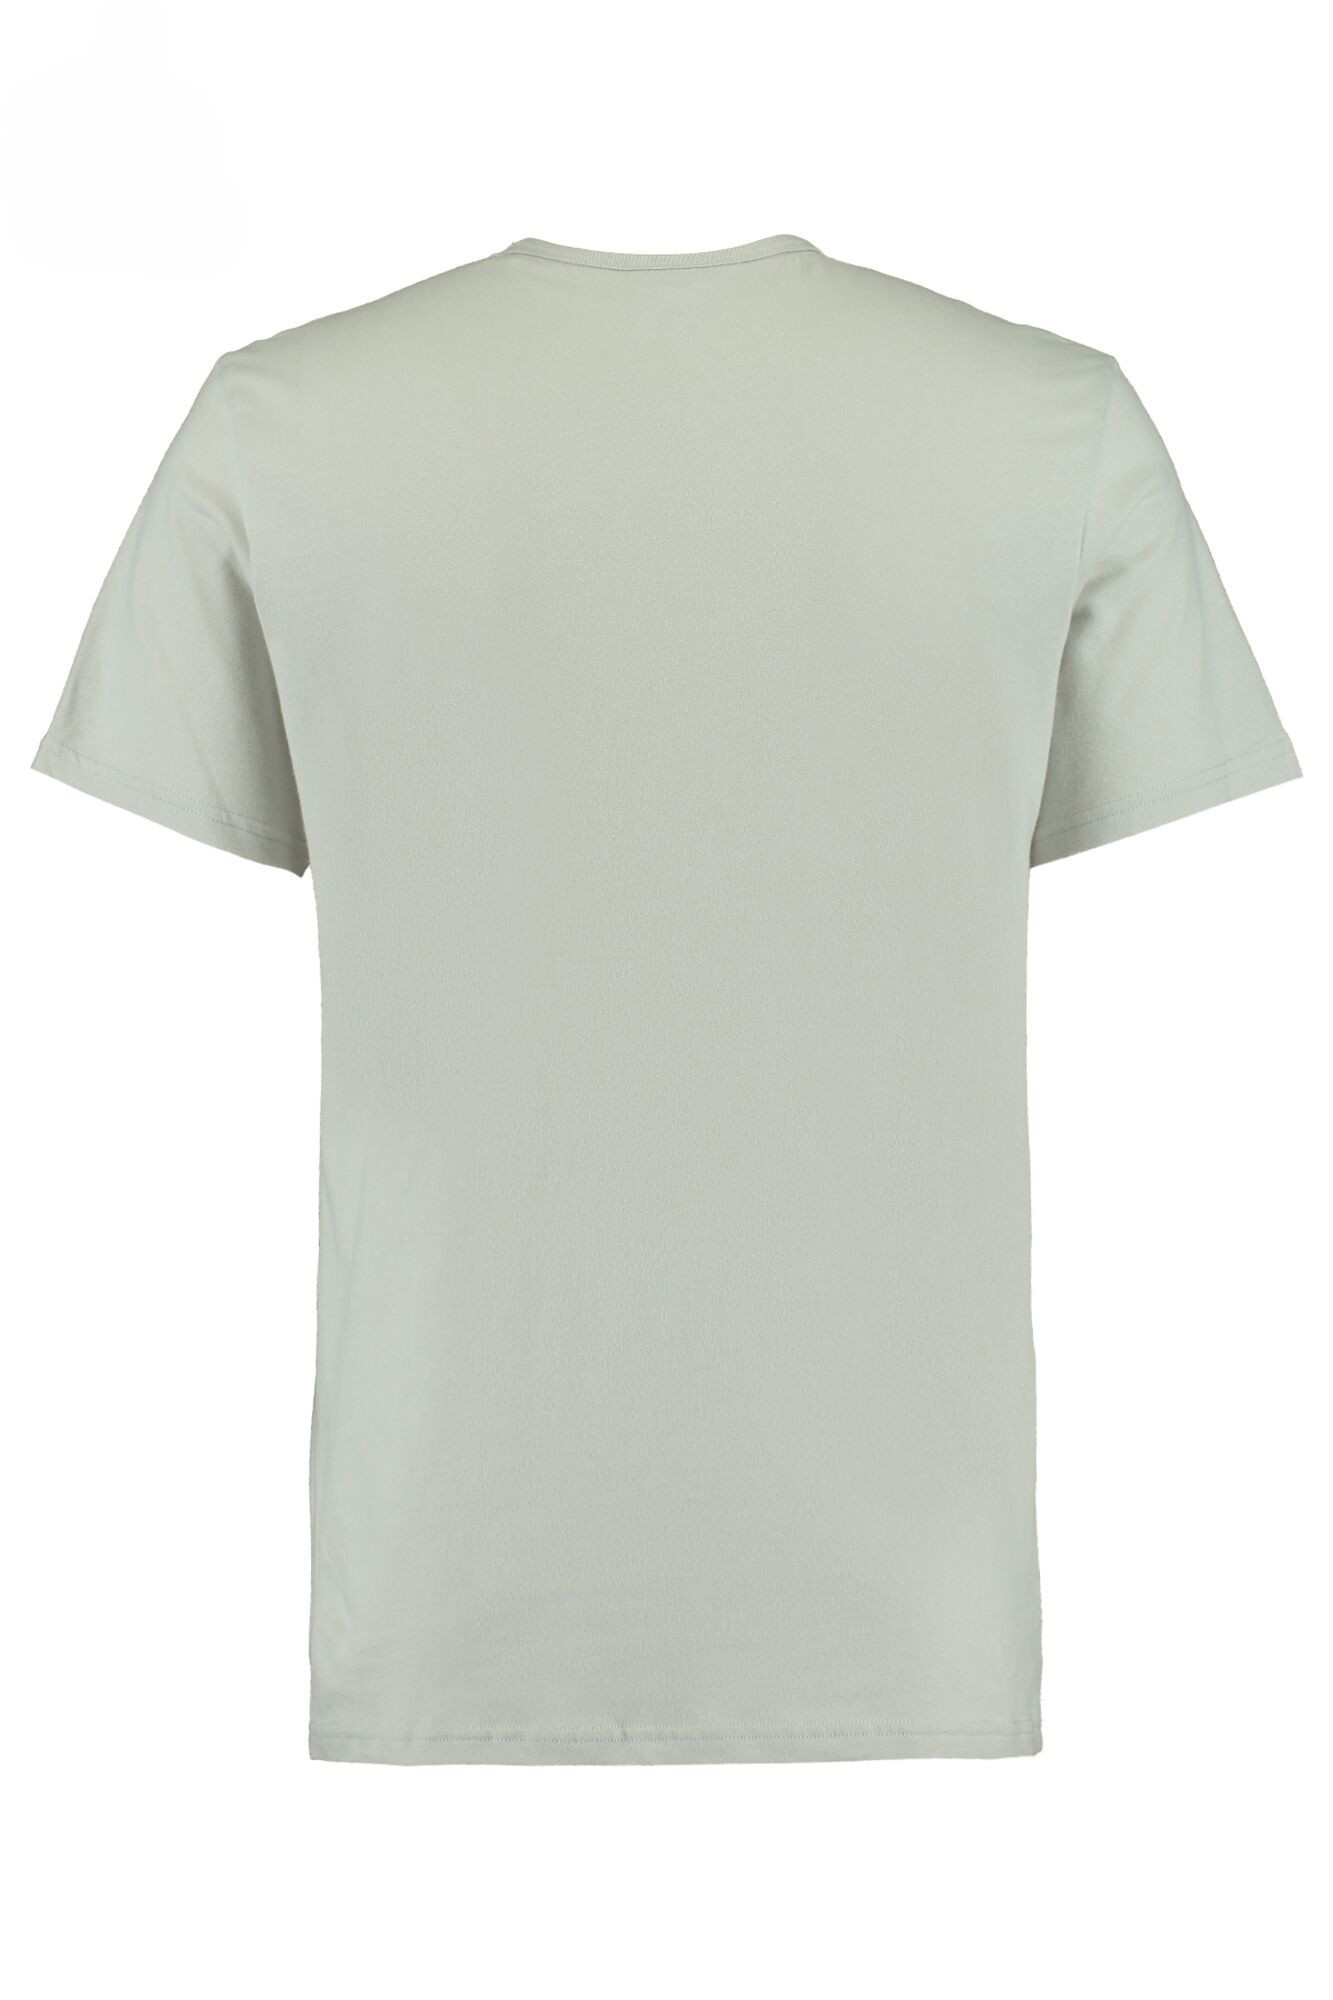 Pánské tričko model 7977556 šedá šedá M - Calvin Klein